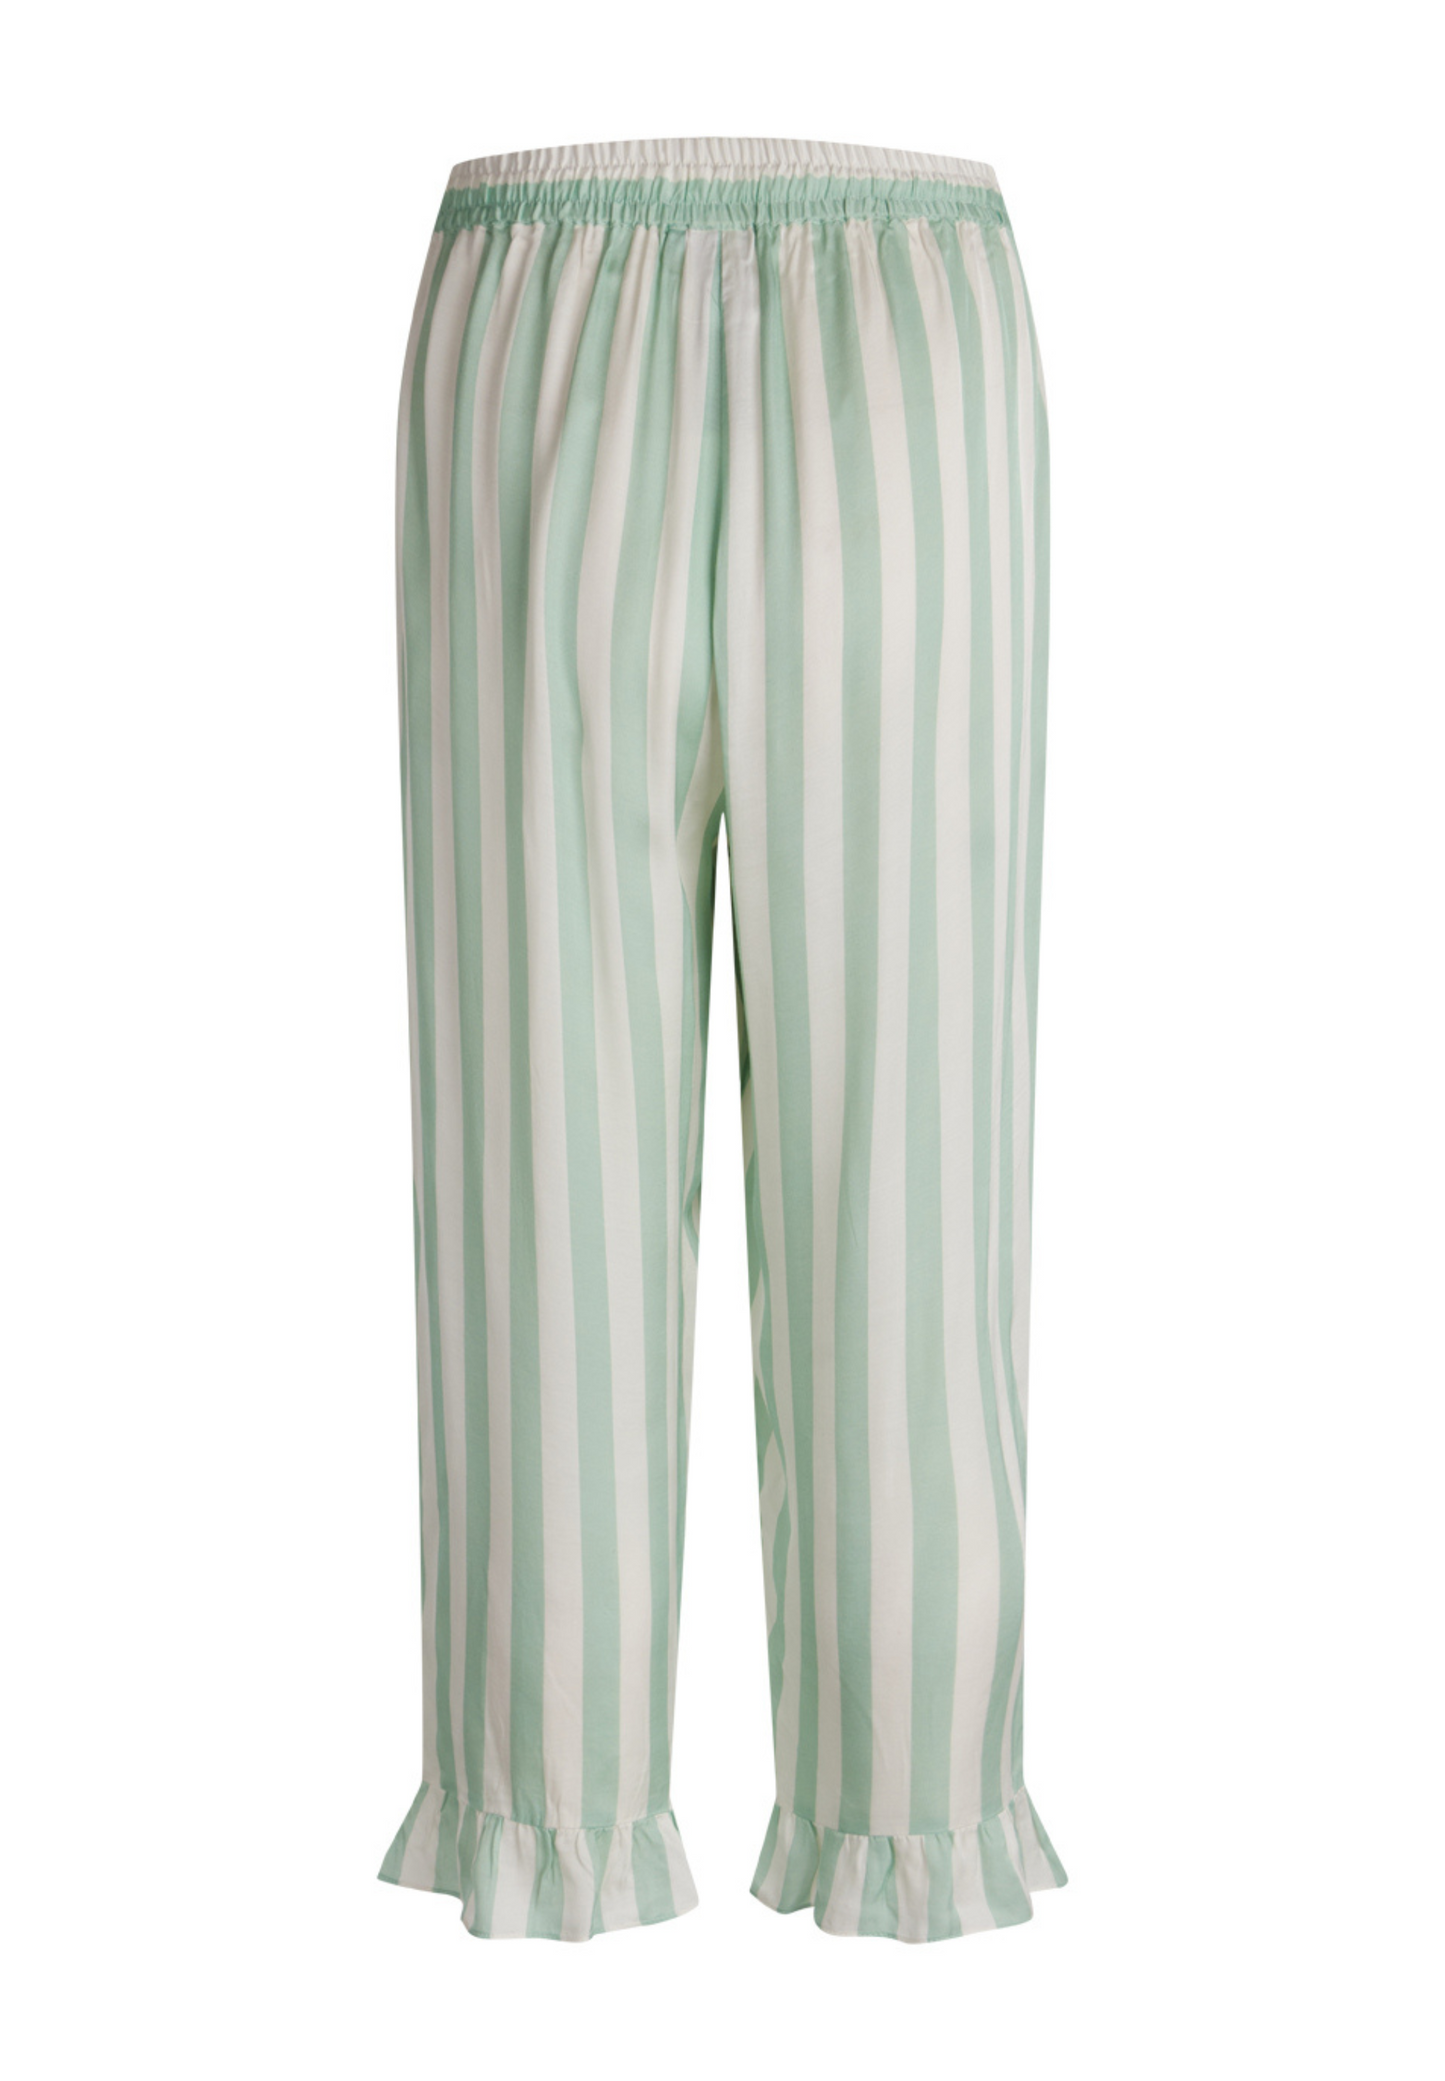 Saga Crop Pyjamasbukser Granite Green